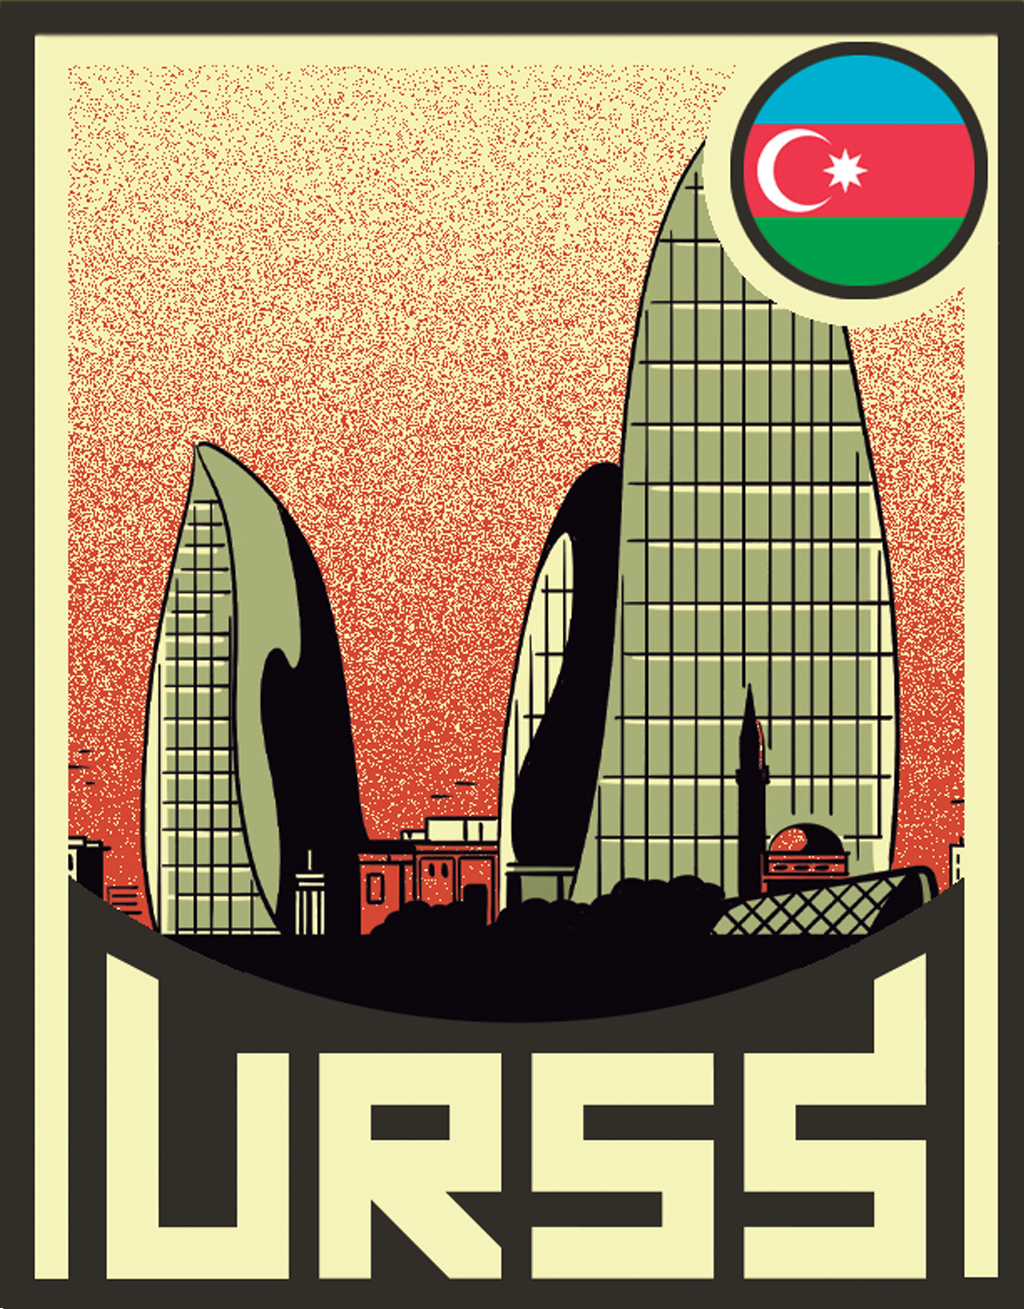 Ilustração das Flame Towers de Baku, no Azerbaijão.